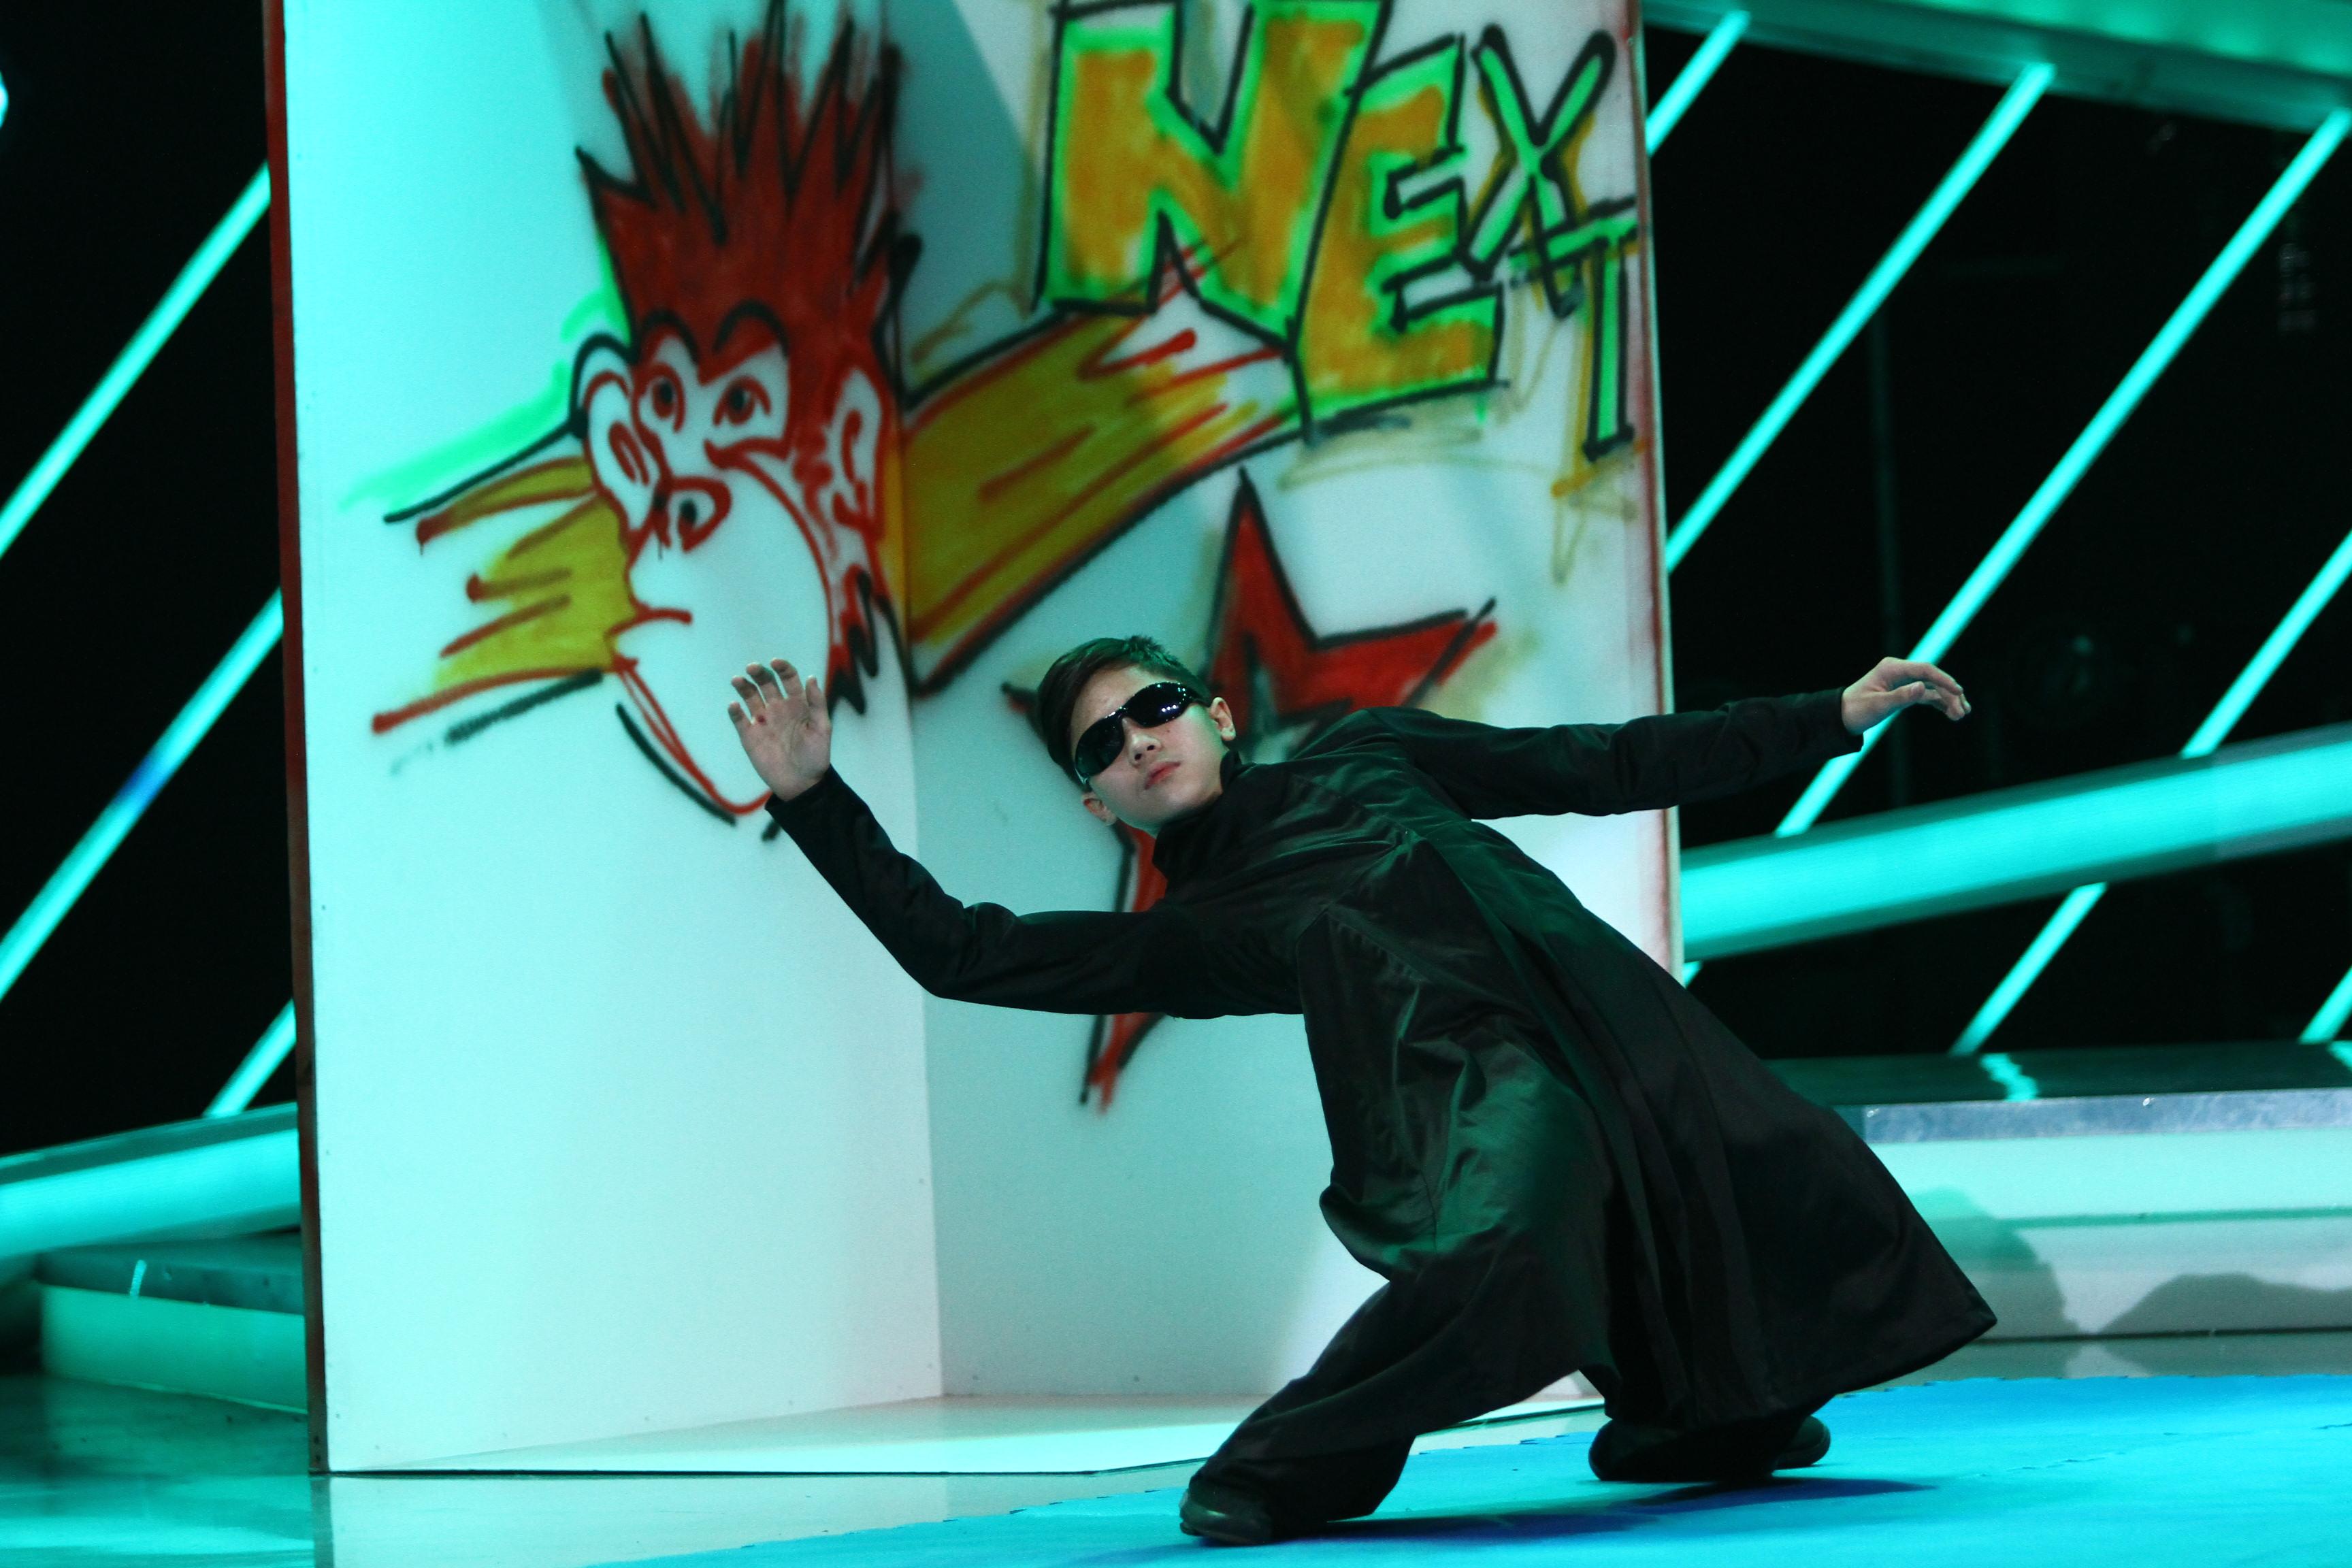 Seară excepțională la „Next Star”! Robert Hu a intrat în pielea lui Neo din „Matrix” și s-a luptat cu mult stil! Nu ai mai văzut așa ceva!